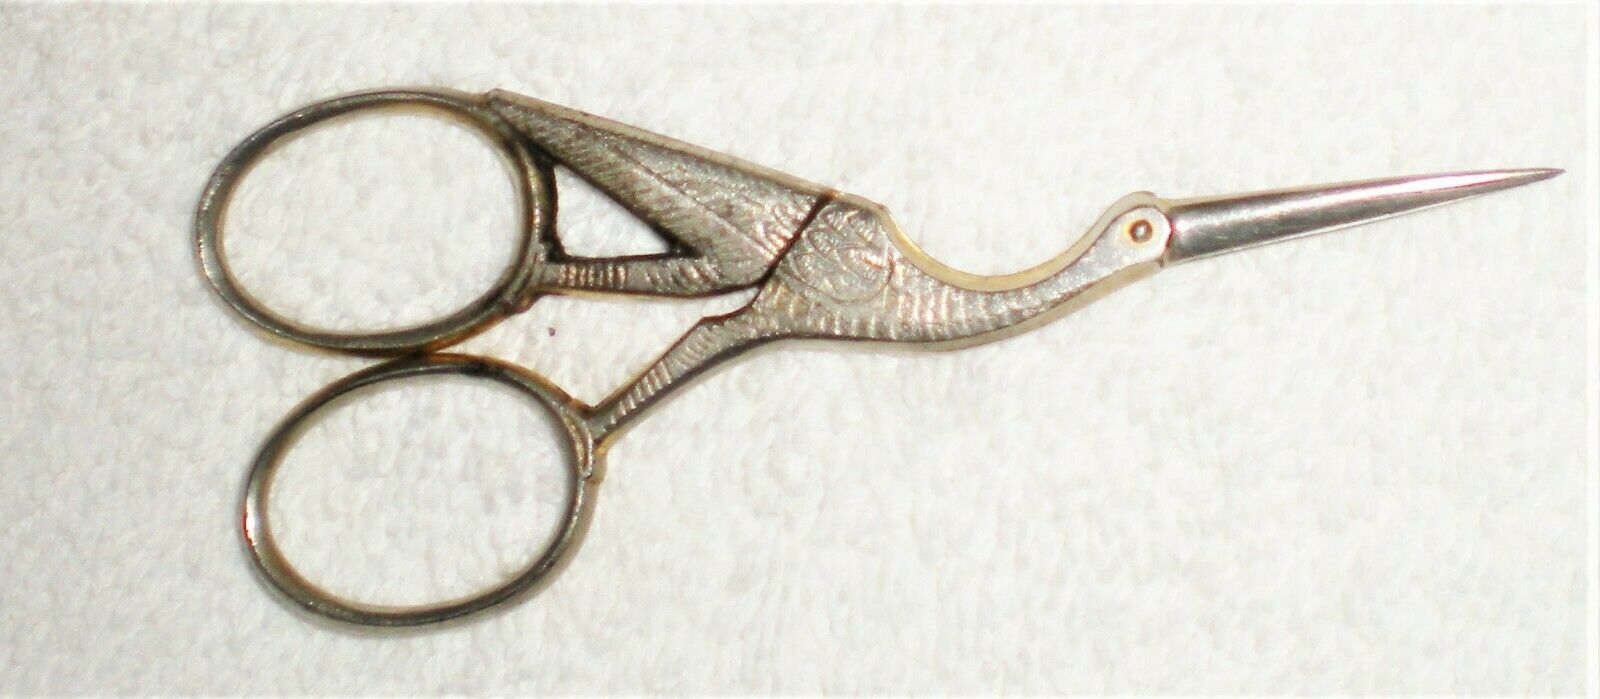 Early Antique Steel Stork Sewing Scissors Germany De Boer, Bach & Ce Boer 1900's